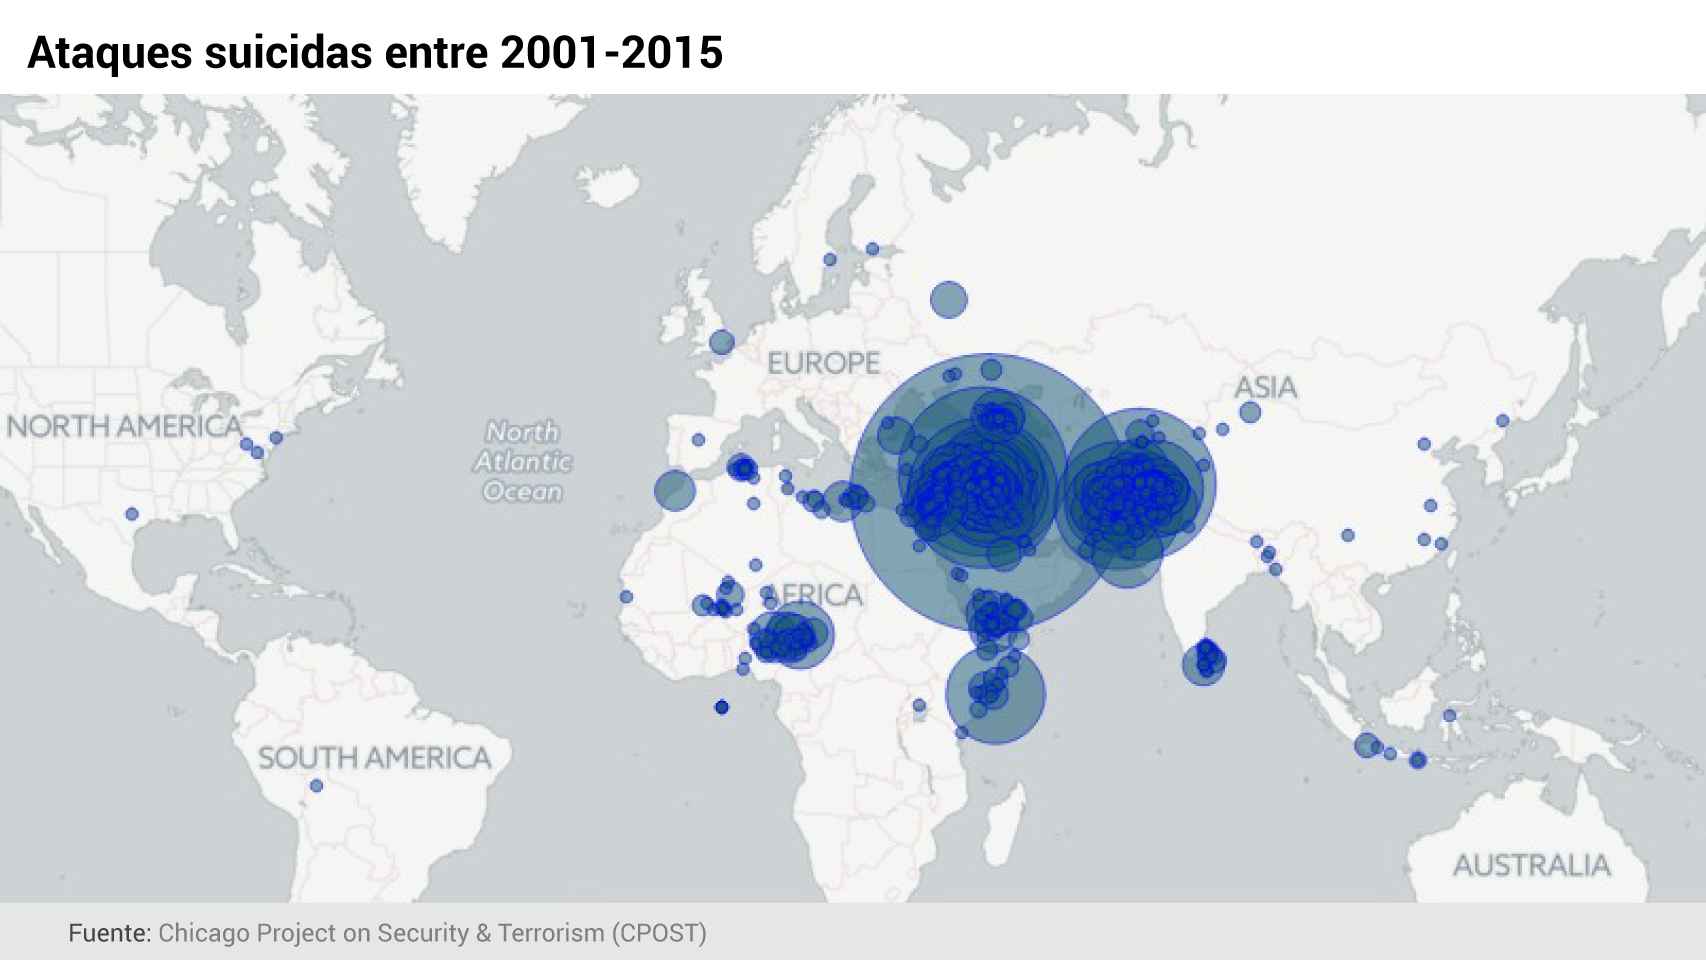 Mapa mundi de los terroristas kamikazes desde el año del 11-S (aclaración sobre Madrid al final del artículo).